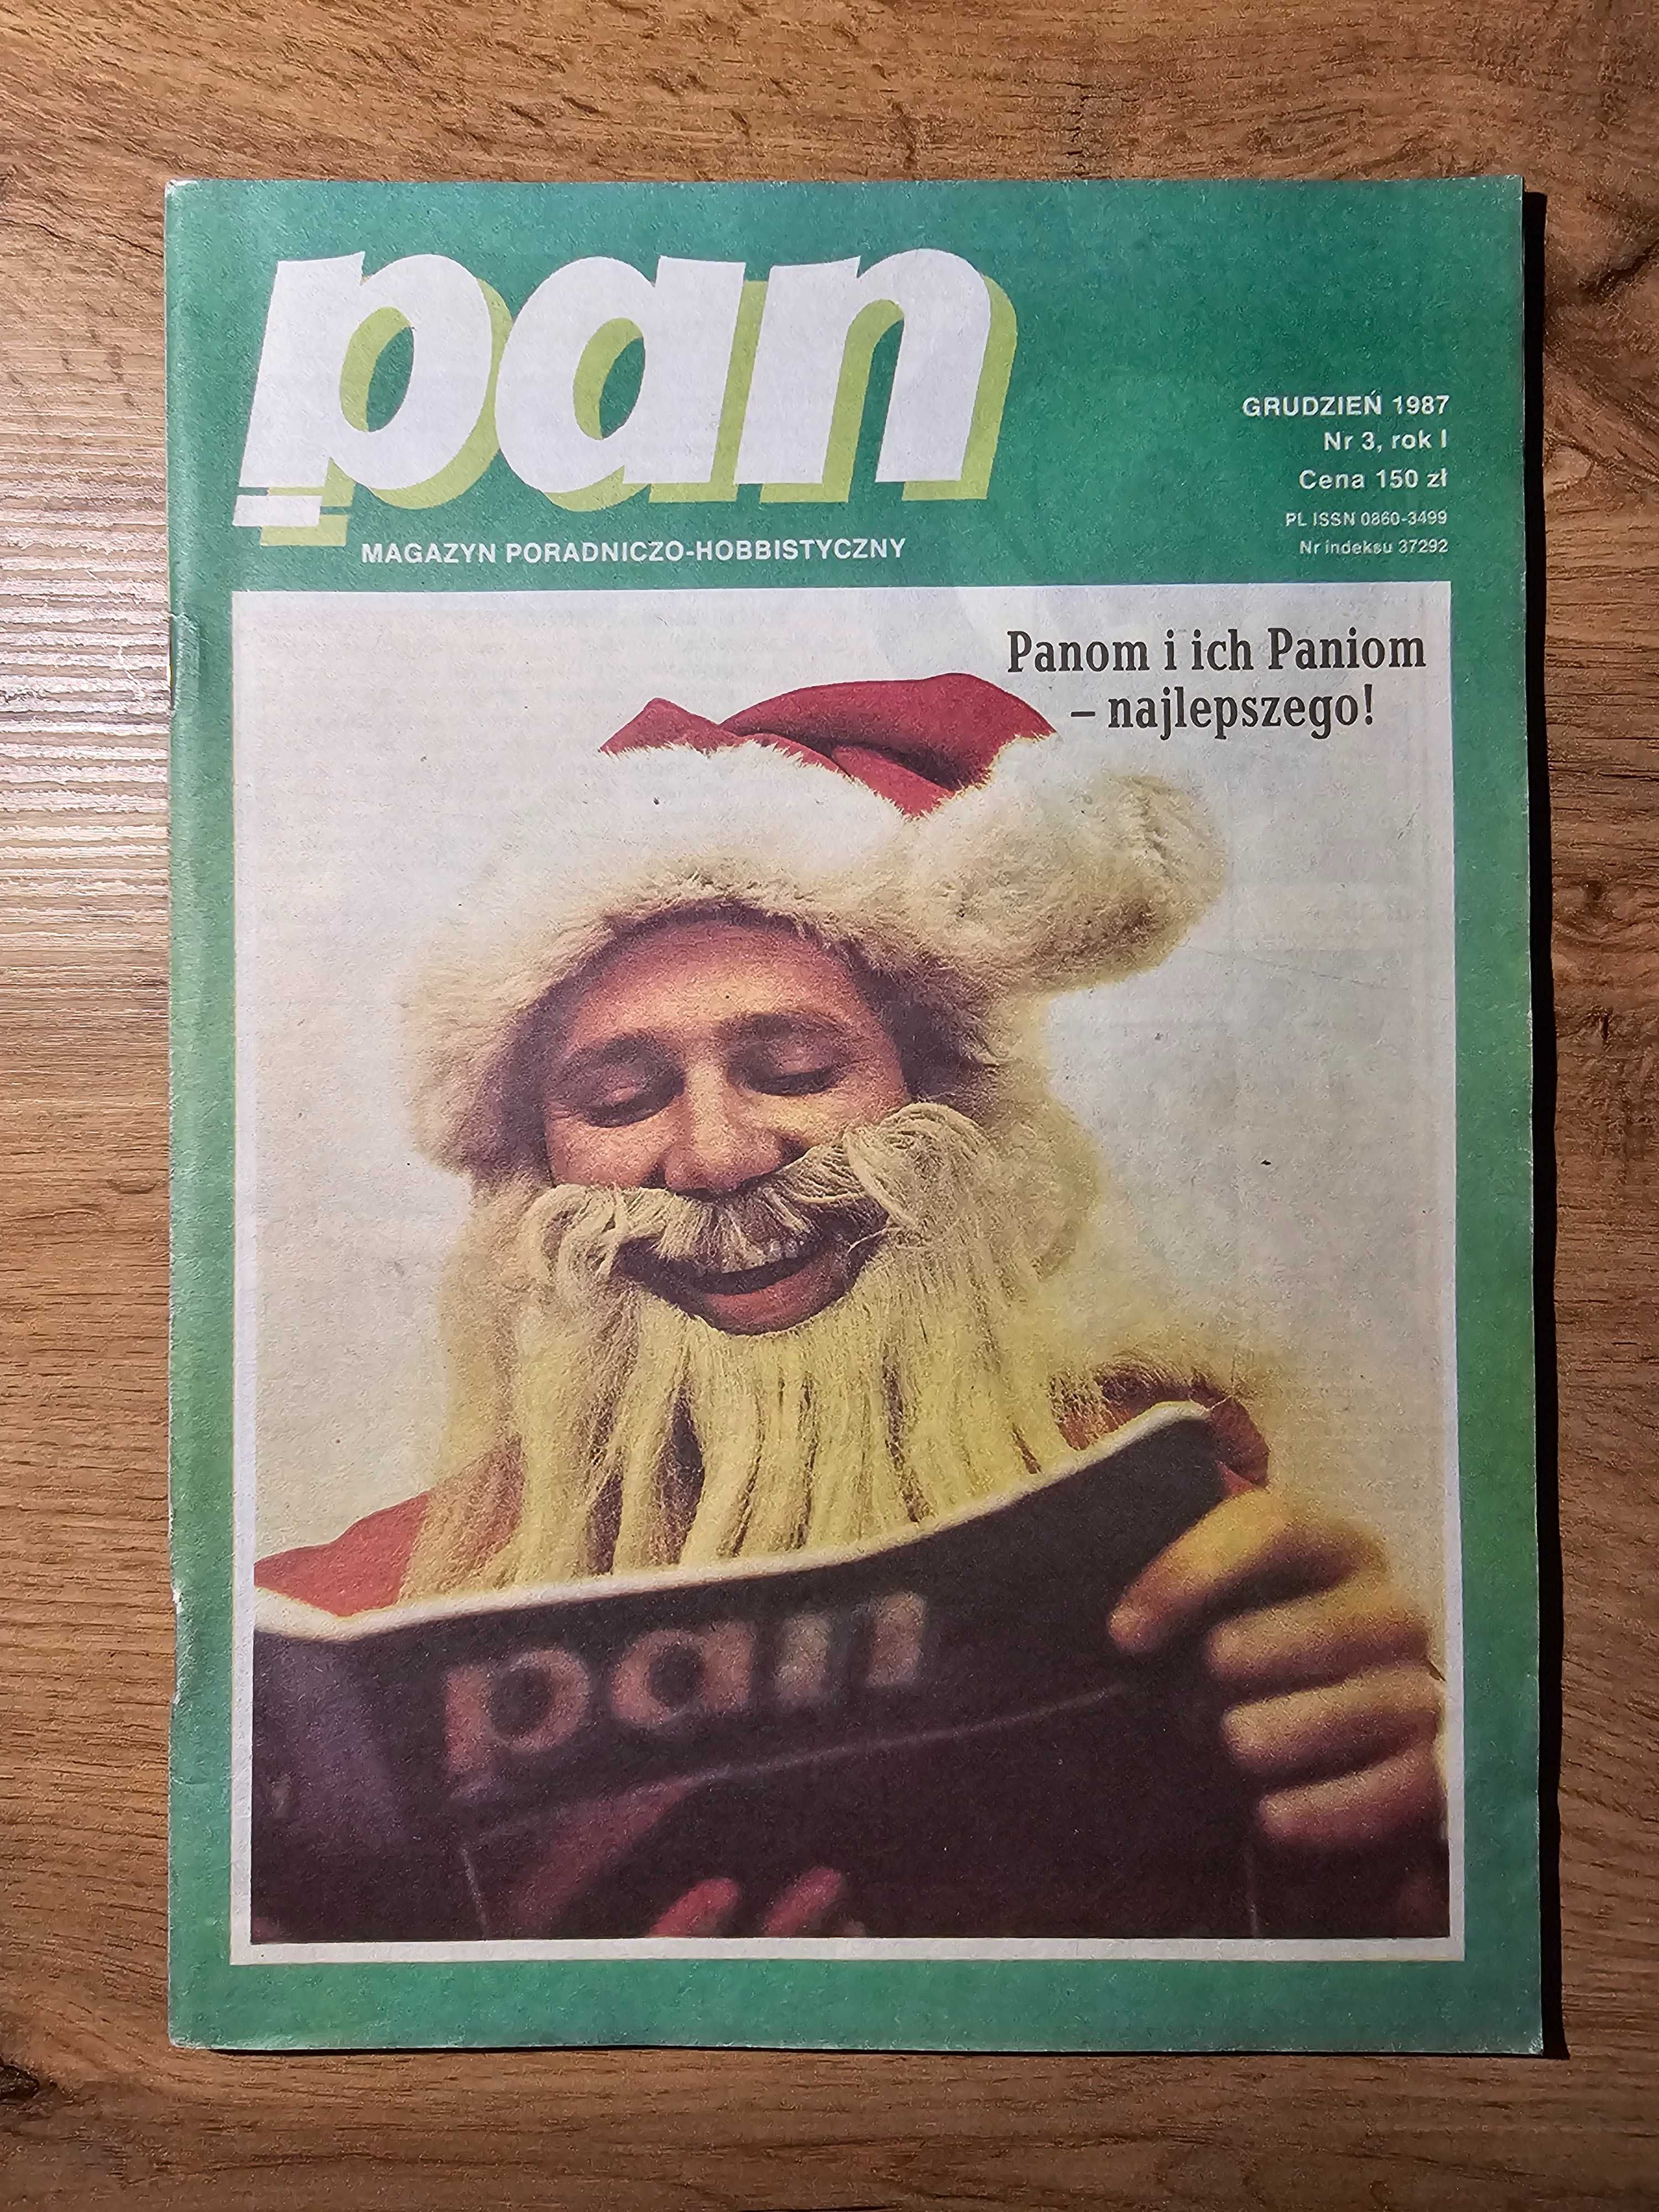 UNIKAT! Magazyn Poradniczo-Hobbistyczny PAN 3/1987 - polski Playboy